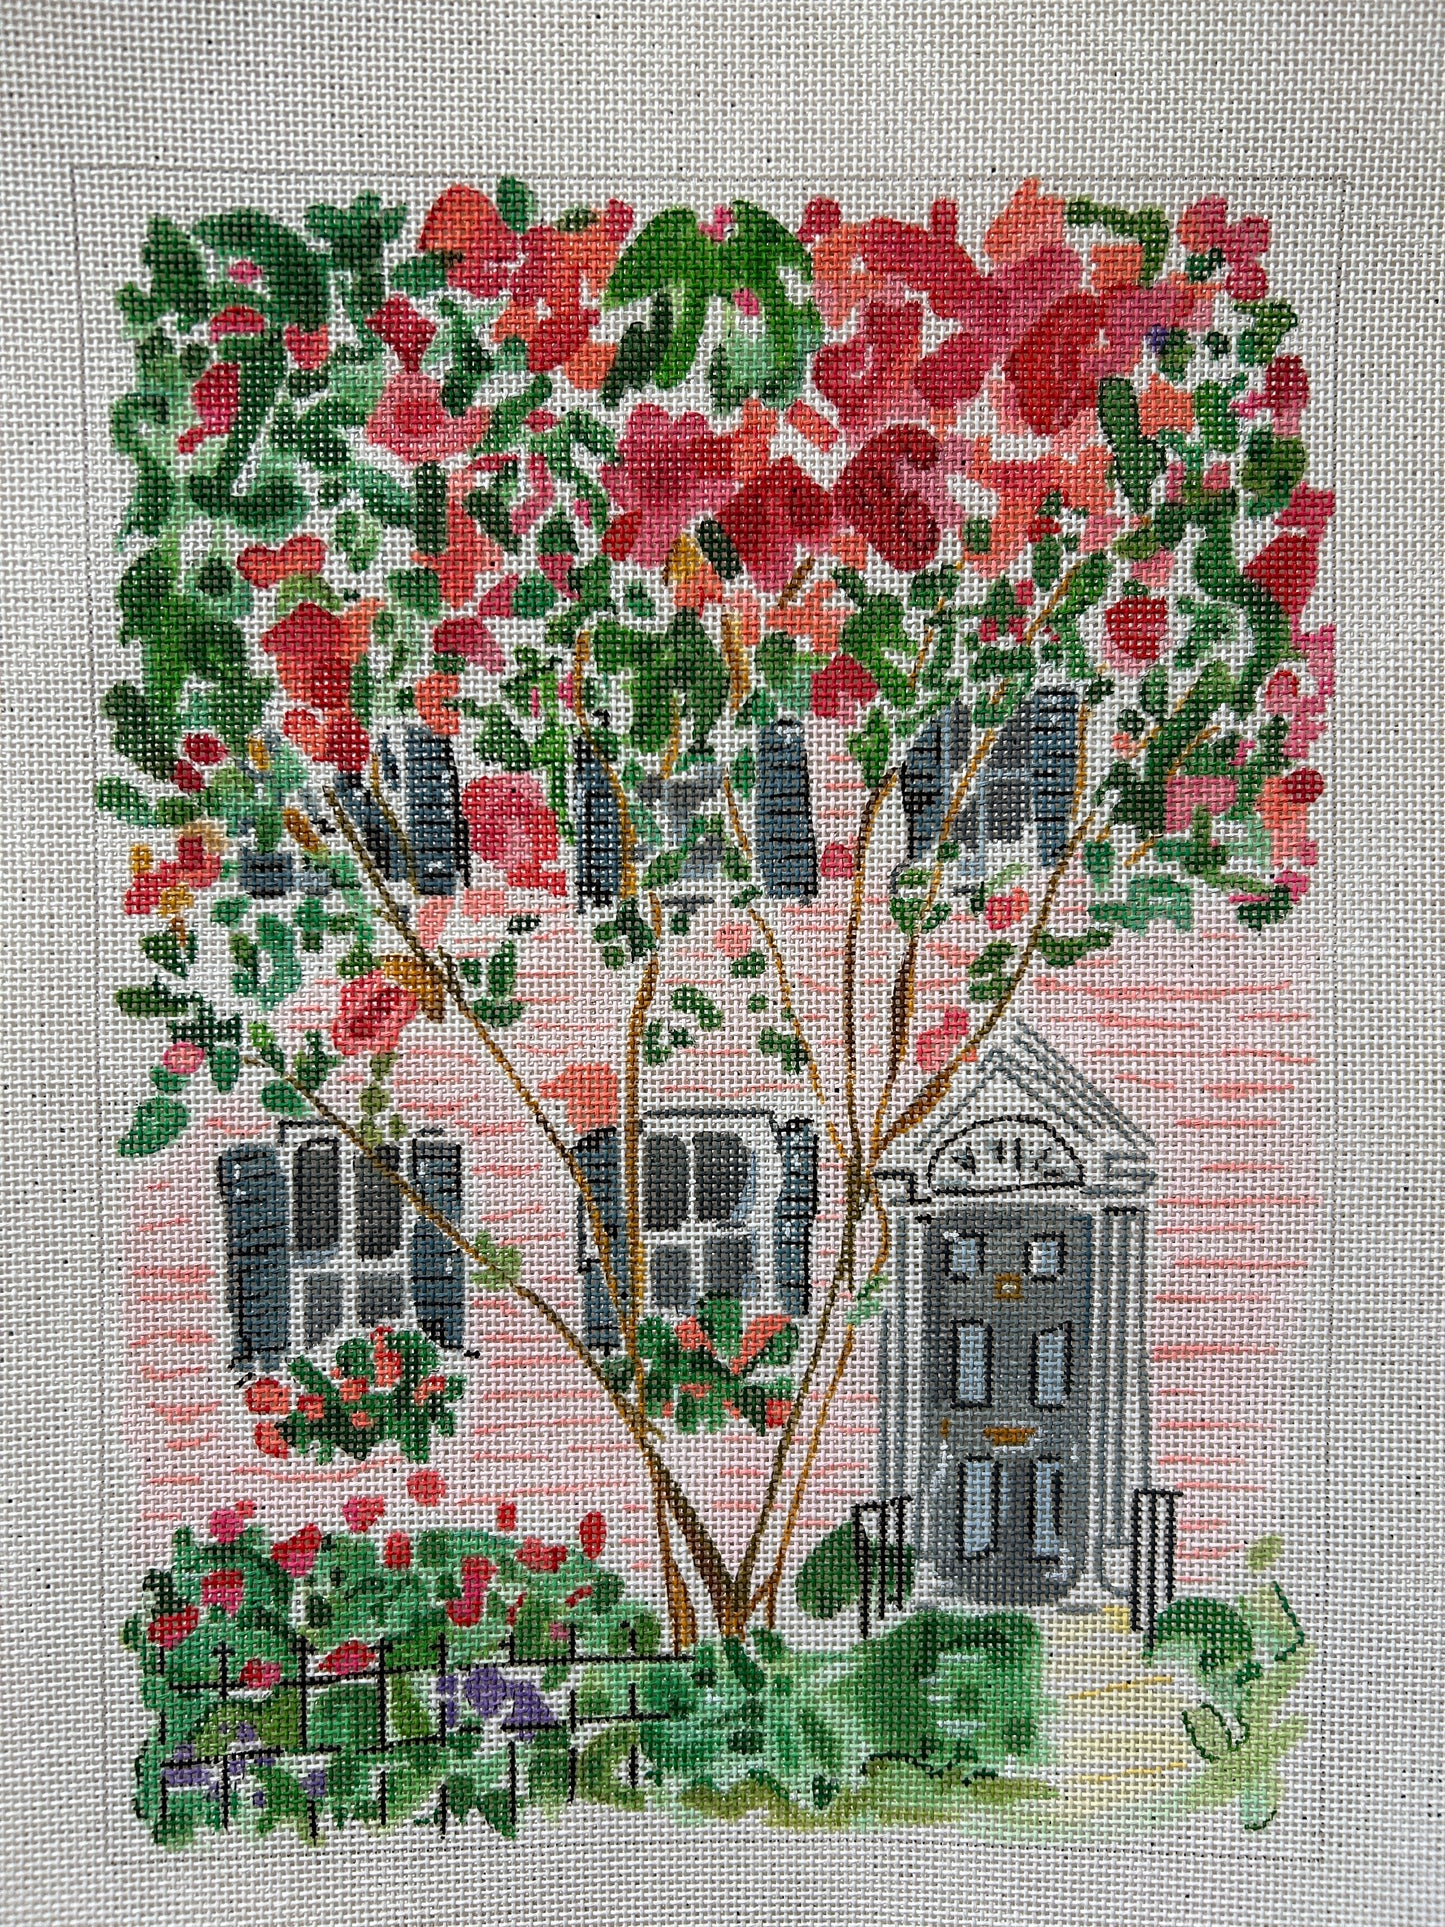 Charleston Pink House & Cherry Tree